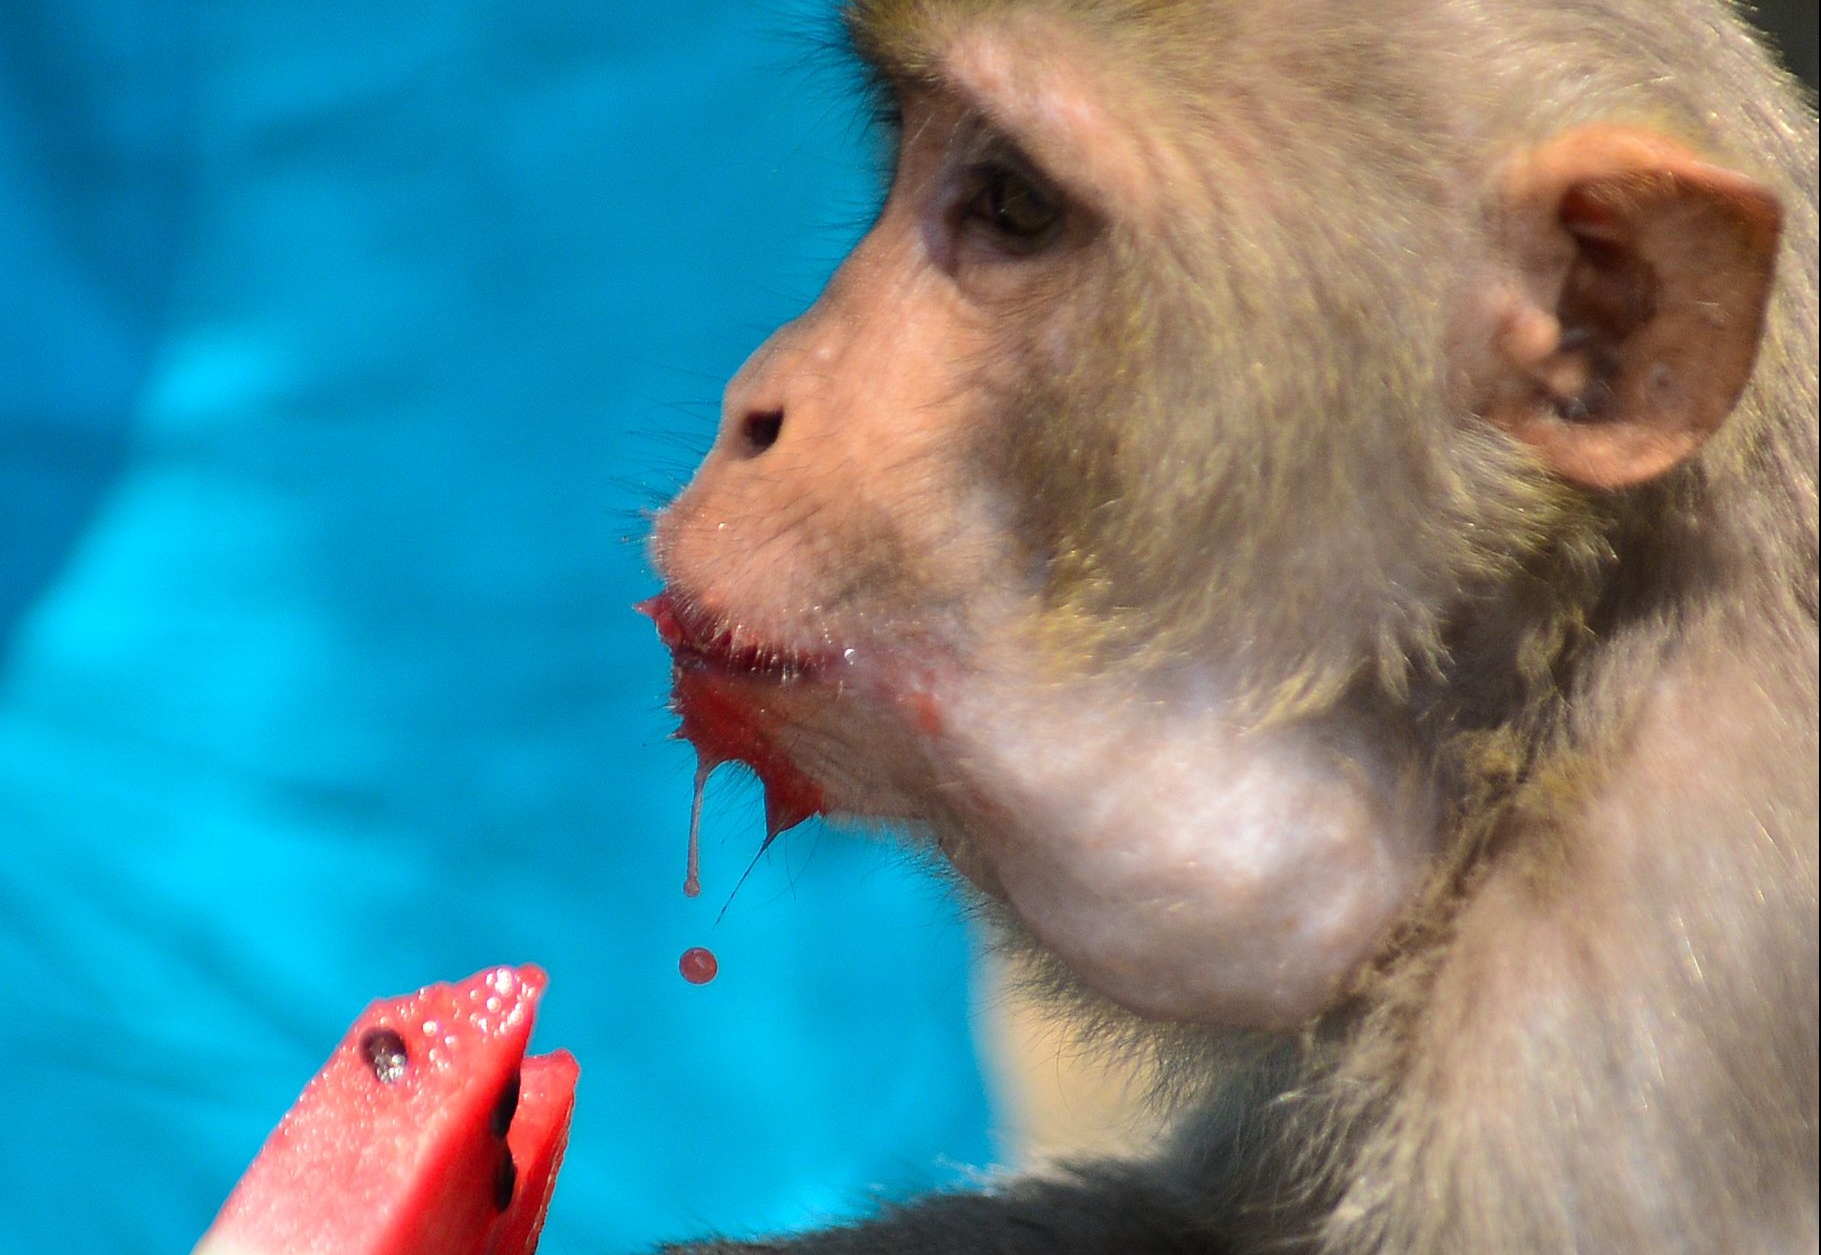 Científicos han llevado a cabo varios experimentos en monos para conocer con más profundidad cómo lograr la inmunidad contra el covid-19. (Foto Prensa Libre: AFP)